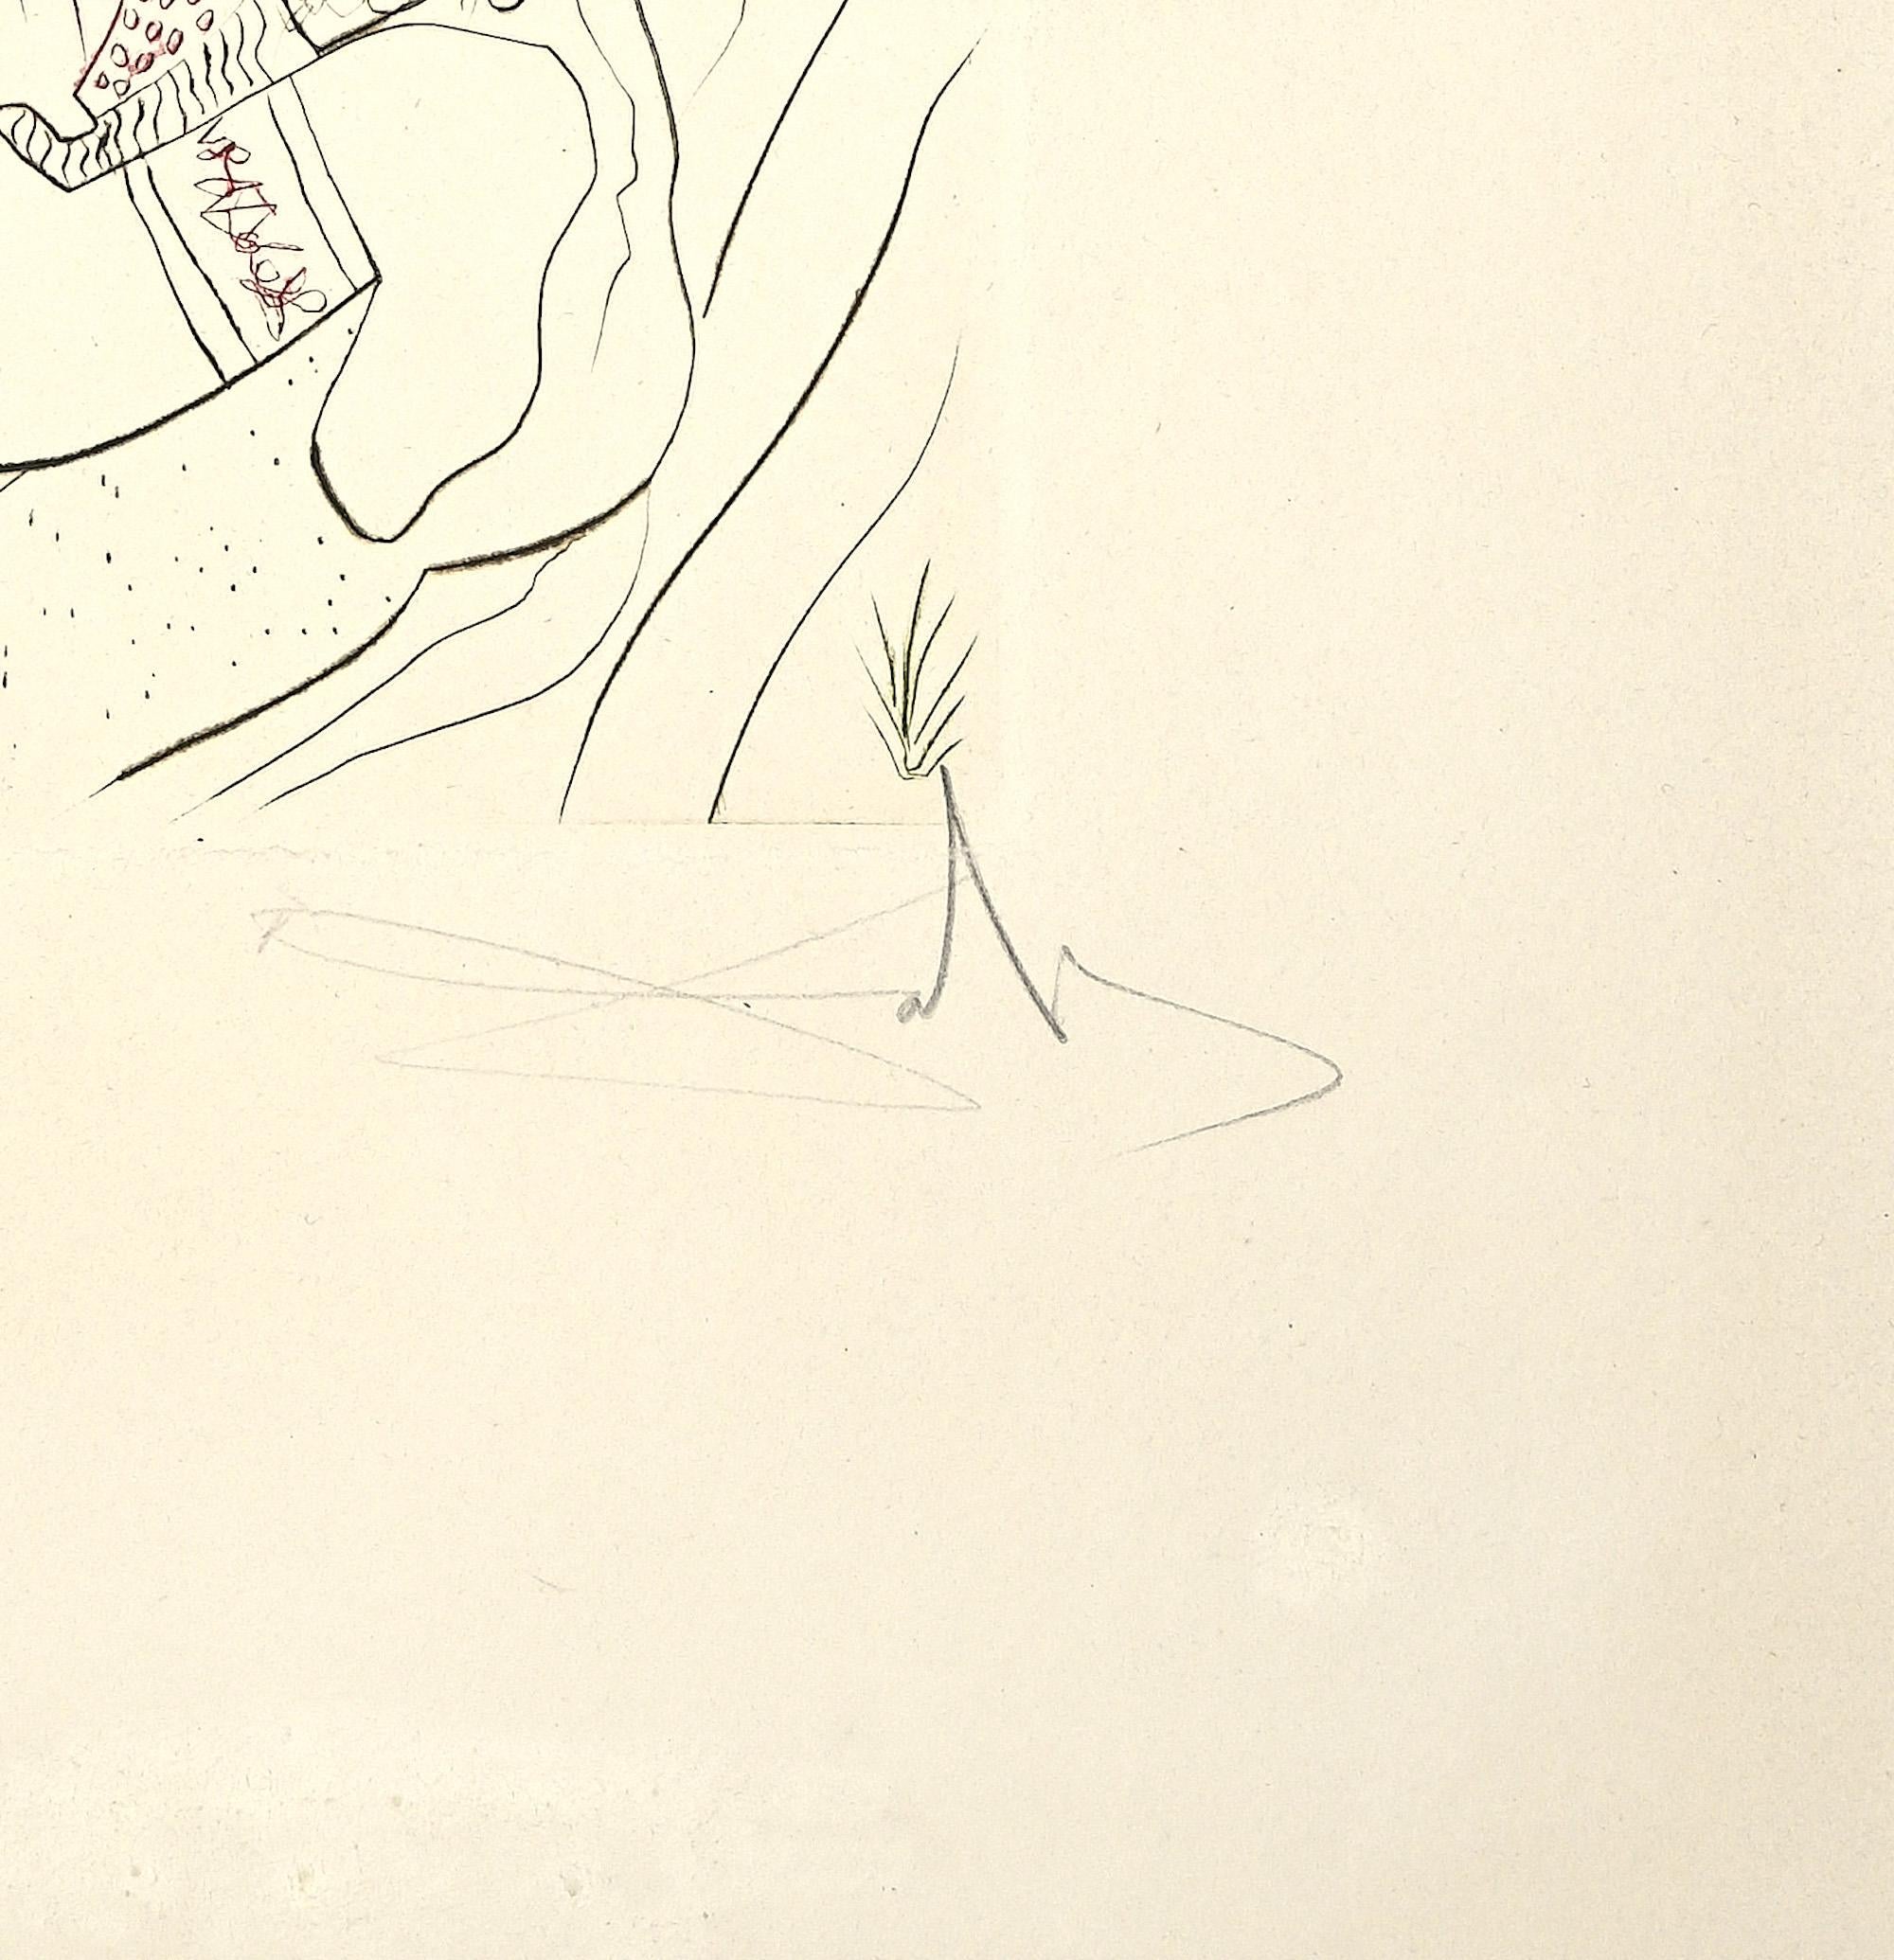 Le Peché Partagé - Etching attr. to Salvador Dalì - 1972 - Print by Salvador Dalí